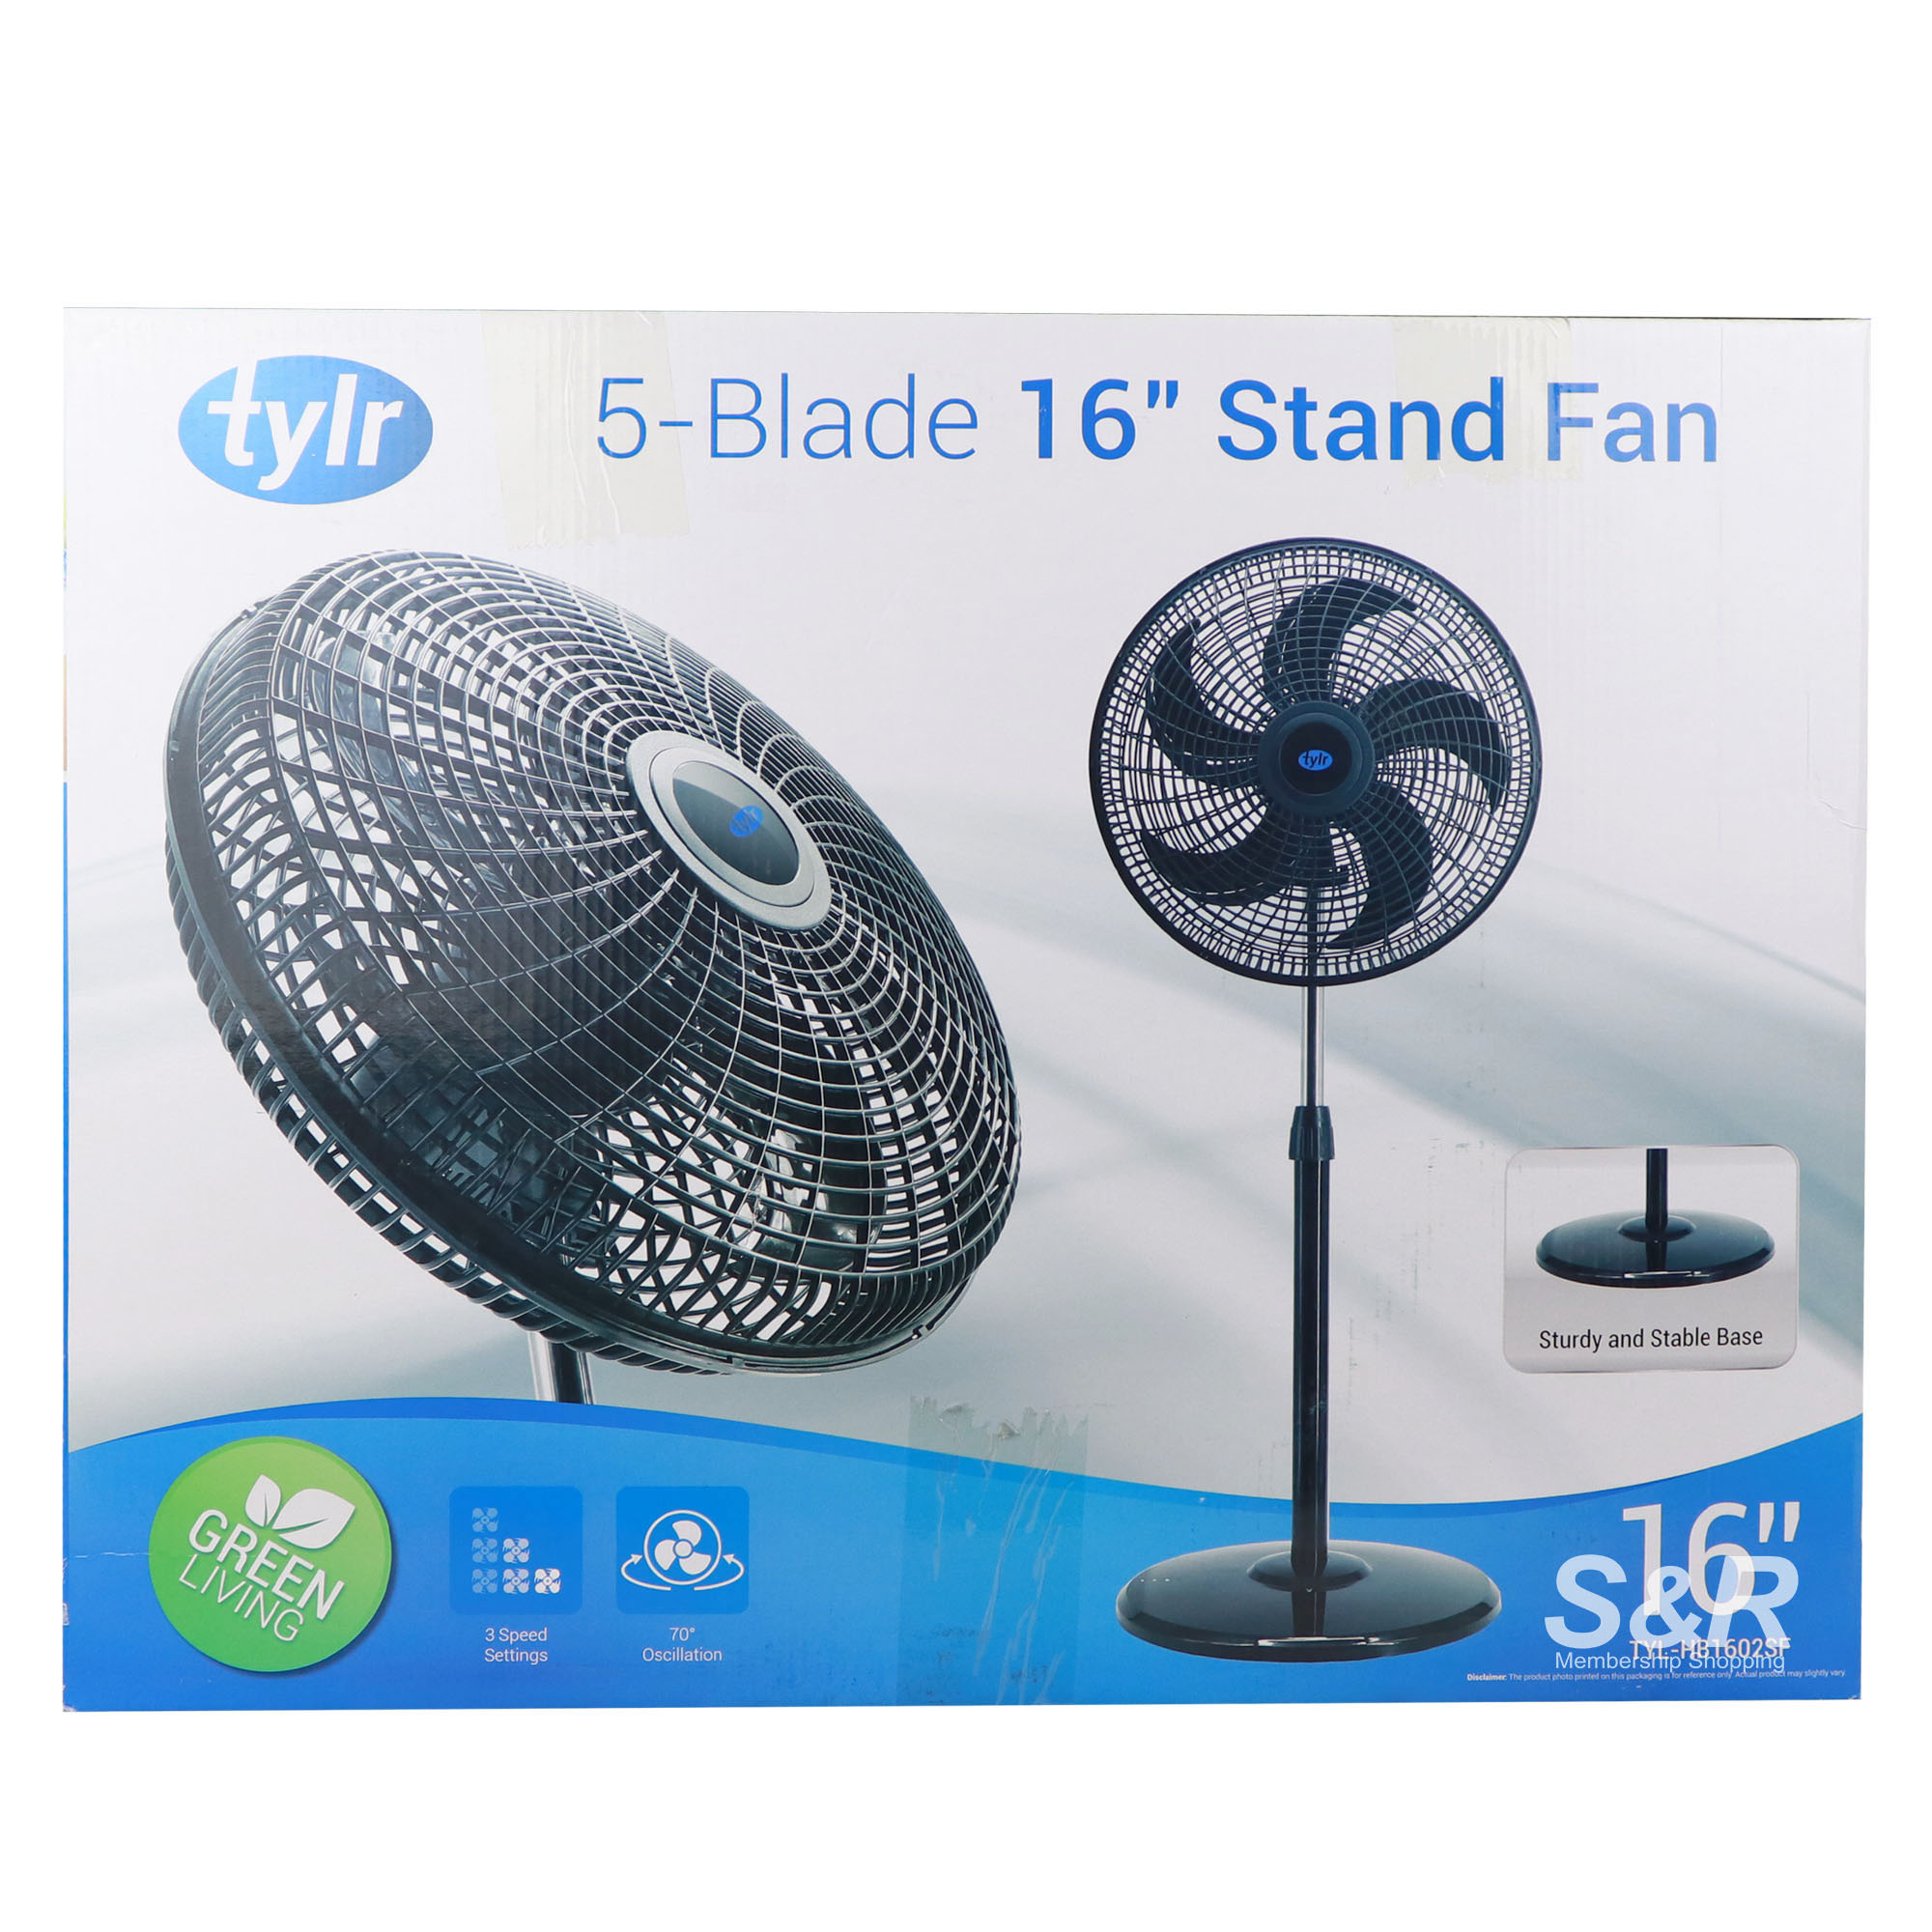 Stand Fan